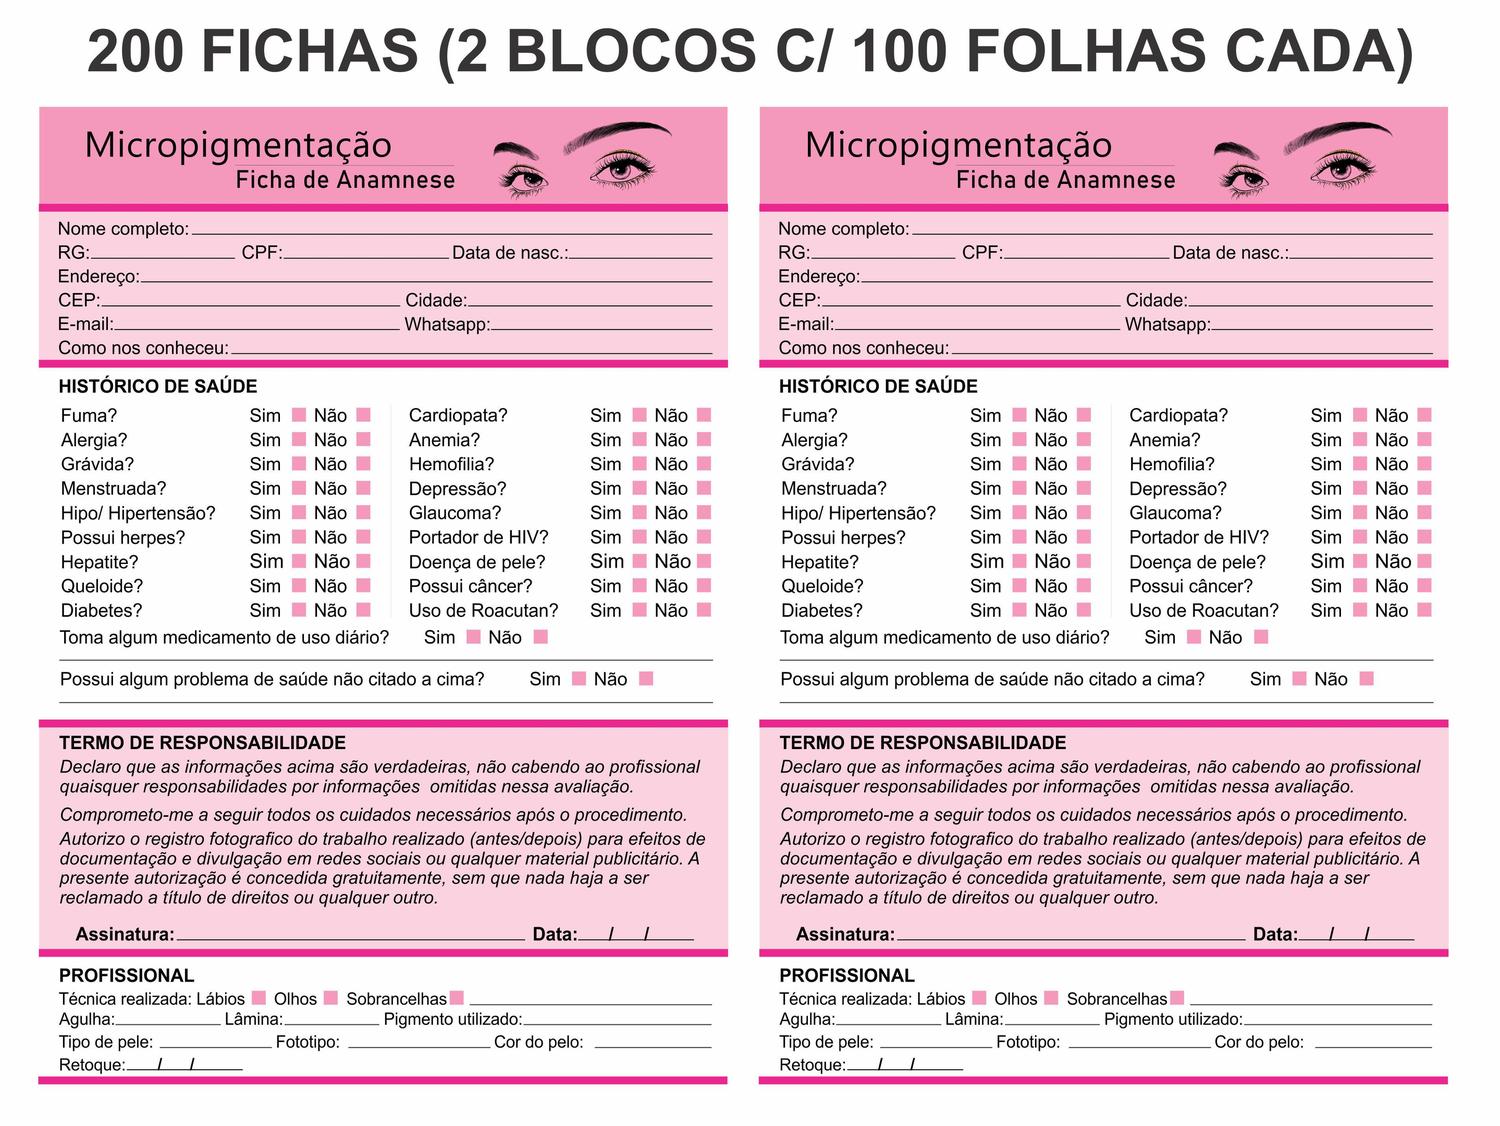 Ficha 2.0 Anamnese Micropigmentação Microblading + Bloco Cuidados Cliente -  100 Folhas em Promoção na Americanas